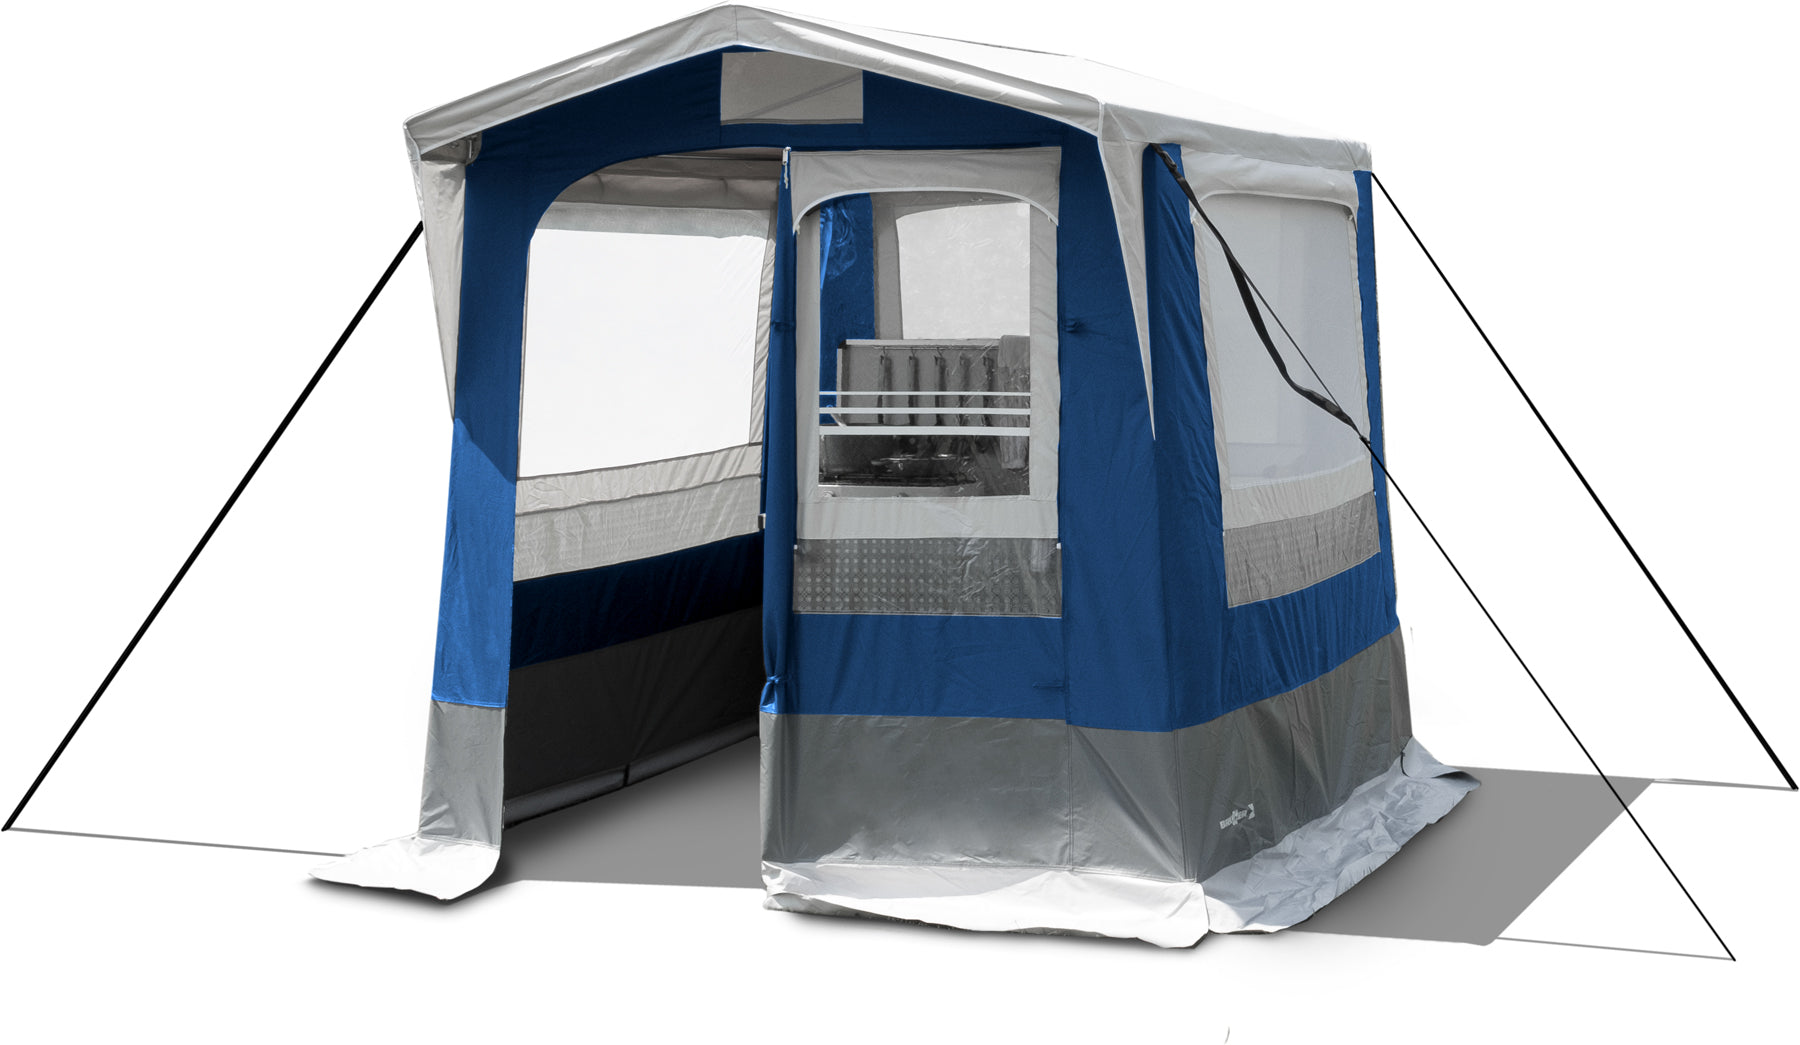 Палатка за кухня, склад или килер, допълнително помещение към караваната и форцелта. Просторни прозрци, здрава конструкция със стоманена рамка. Satelite tent for kitchen, storage to your caravan and campsite.